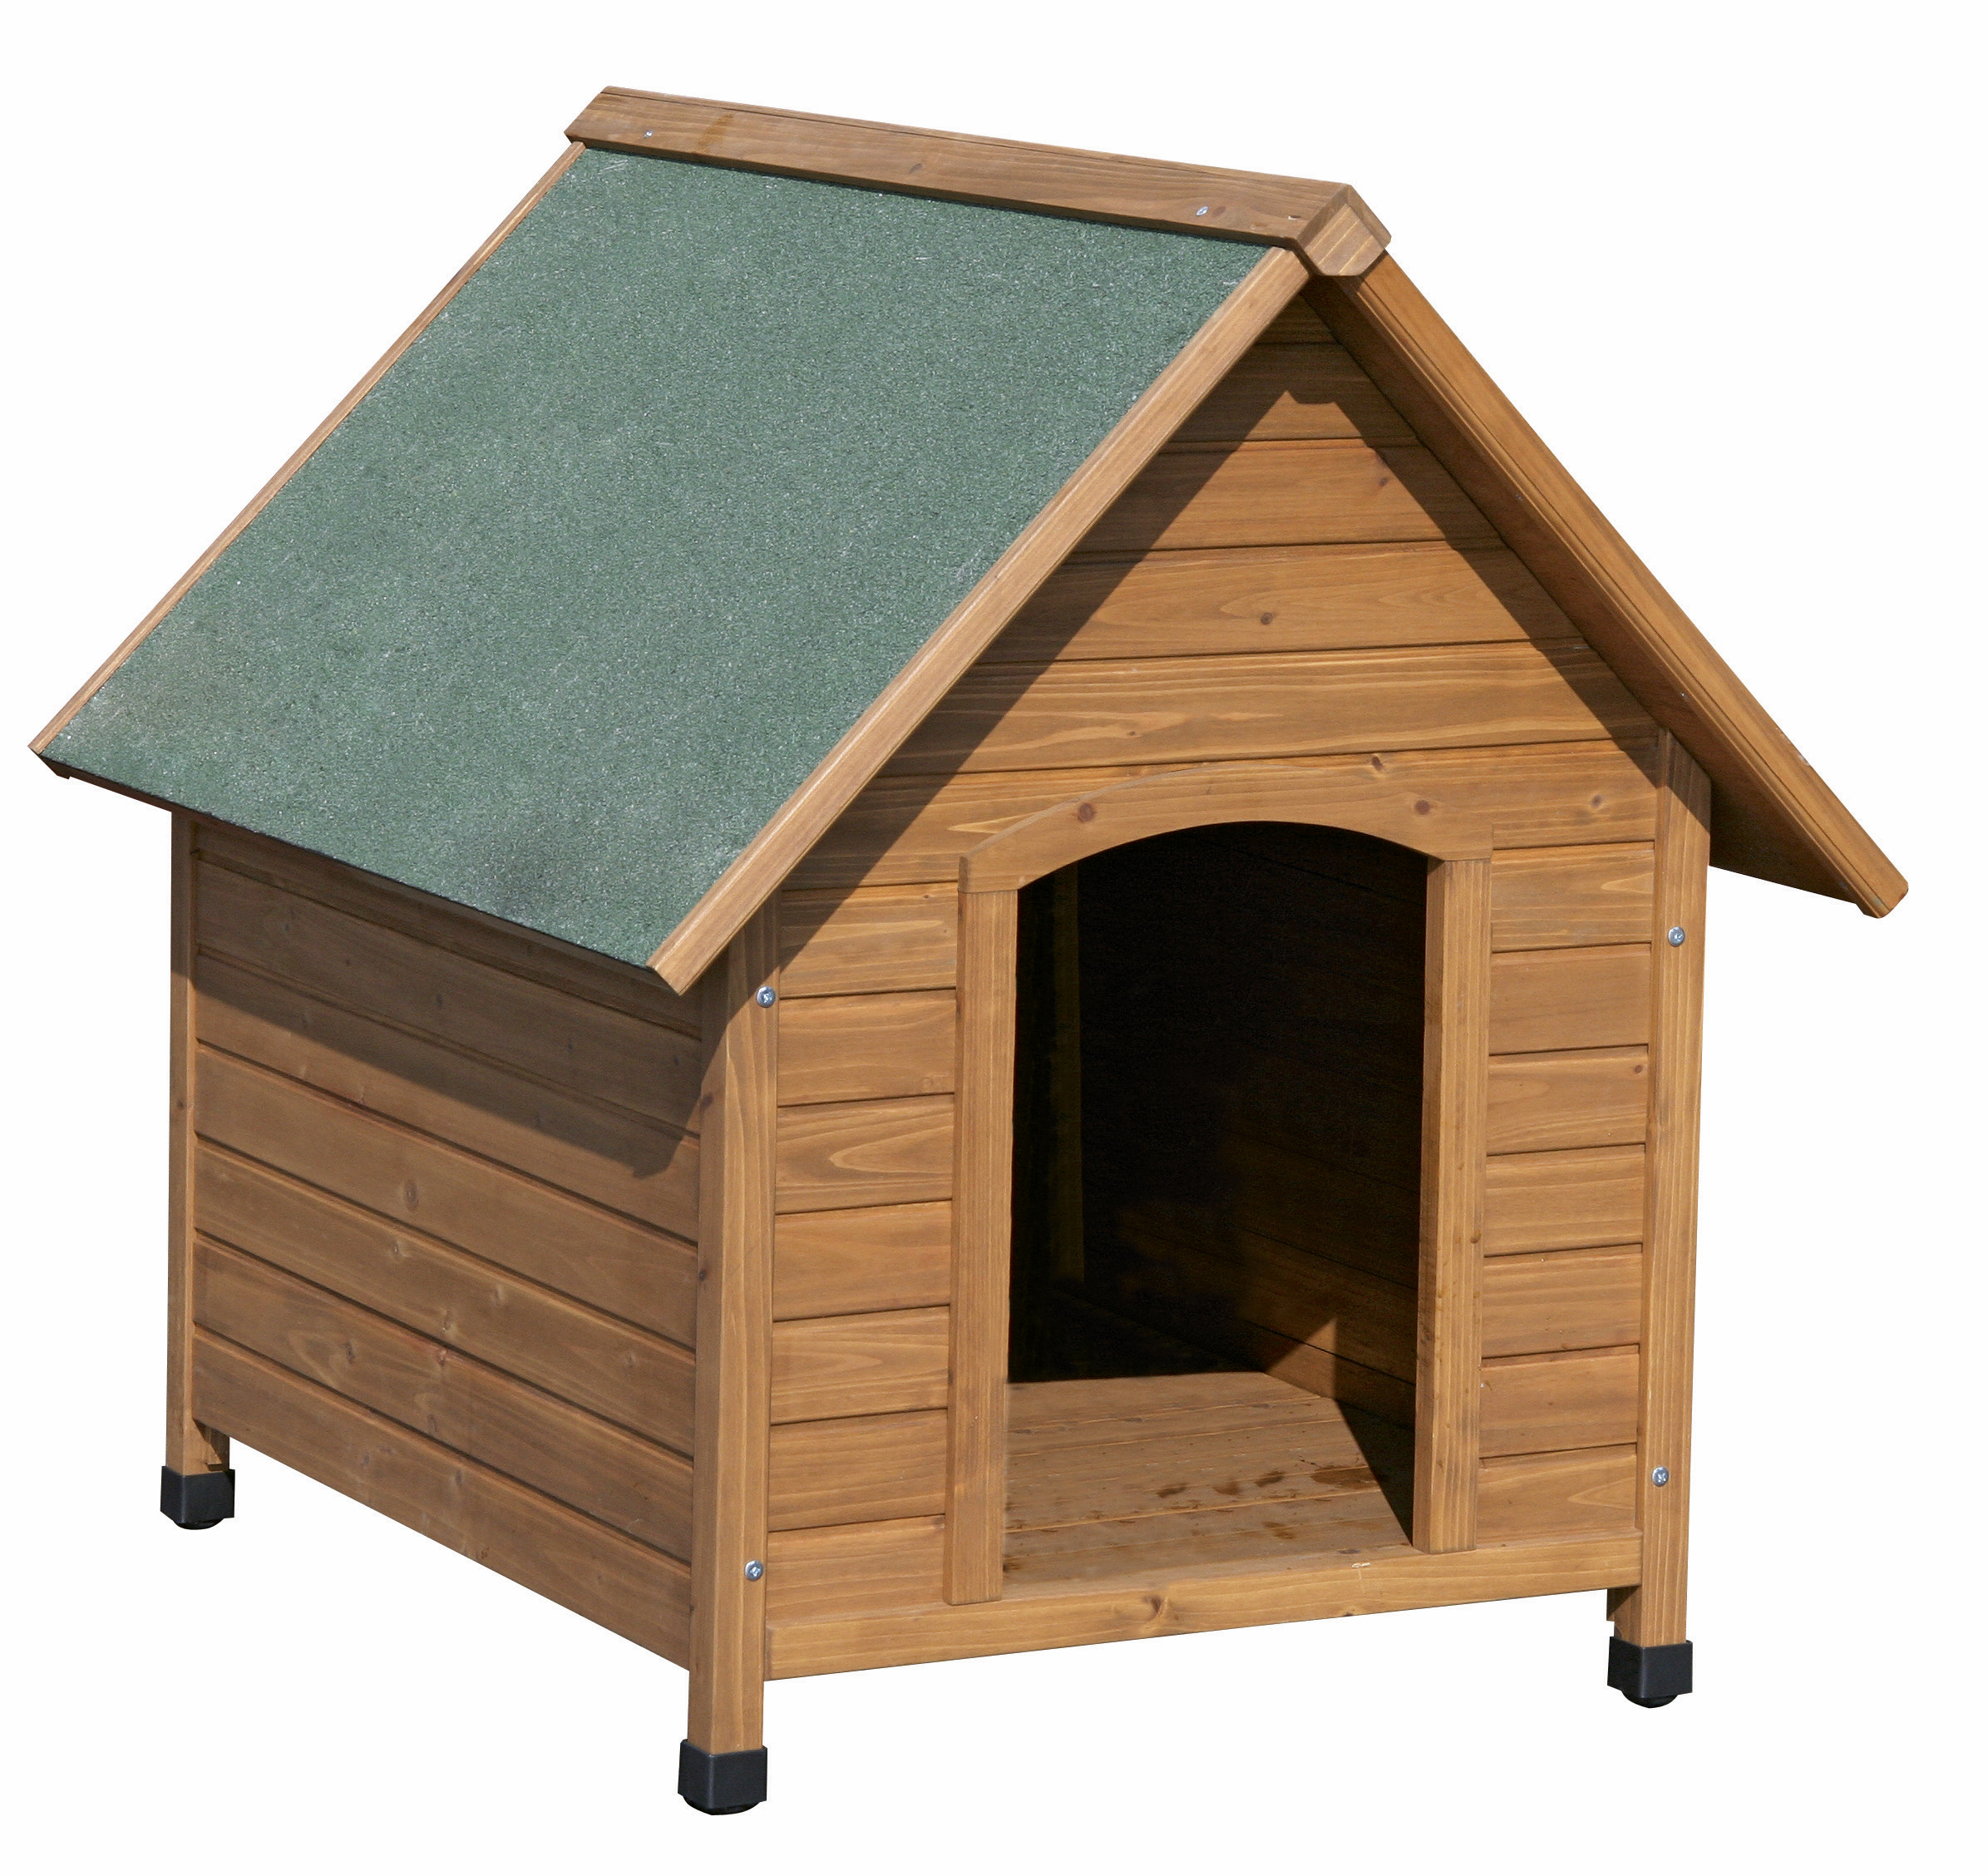 Cuccia per cani in legno da esterno: Cuccia Cani